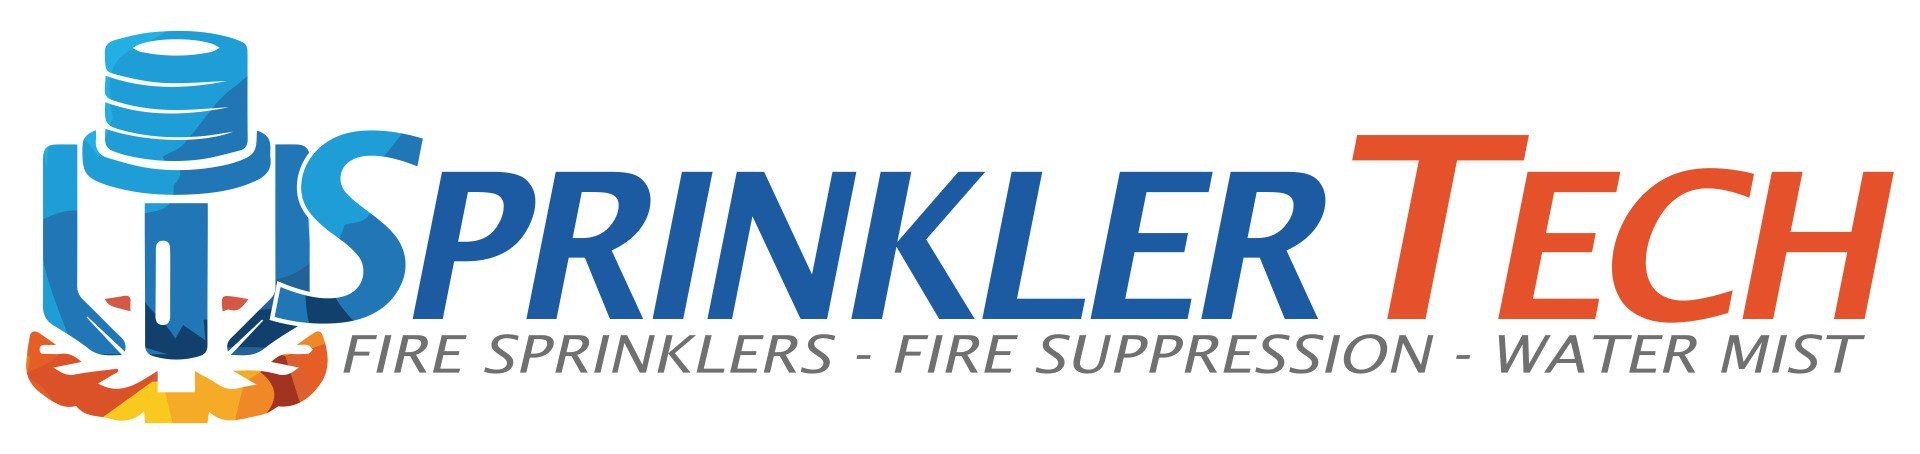 Sprinkler Tech Ltd logo